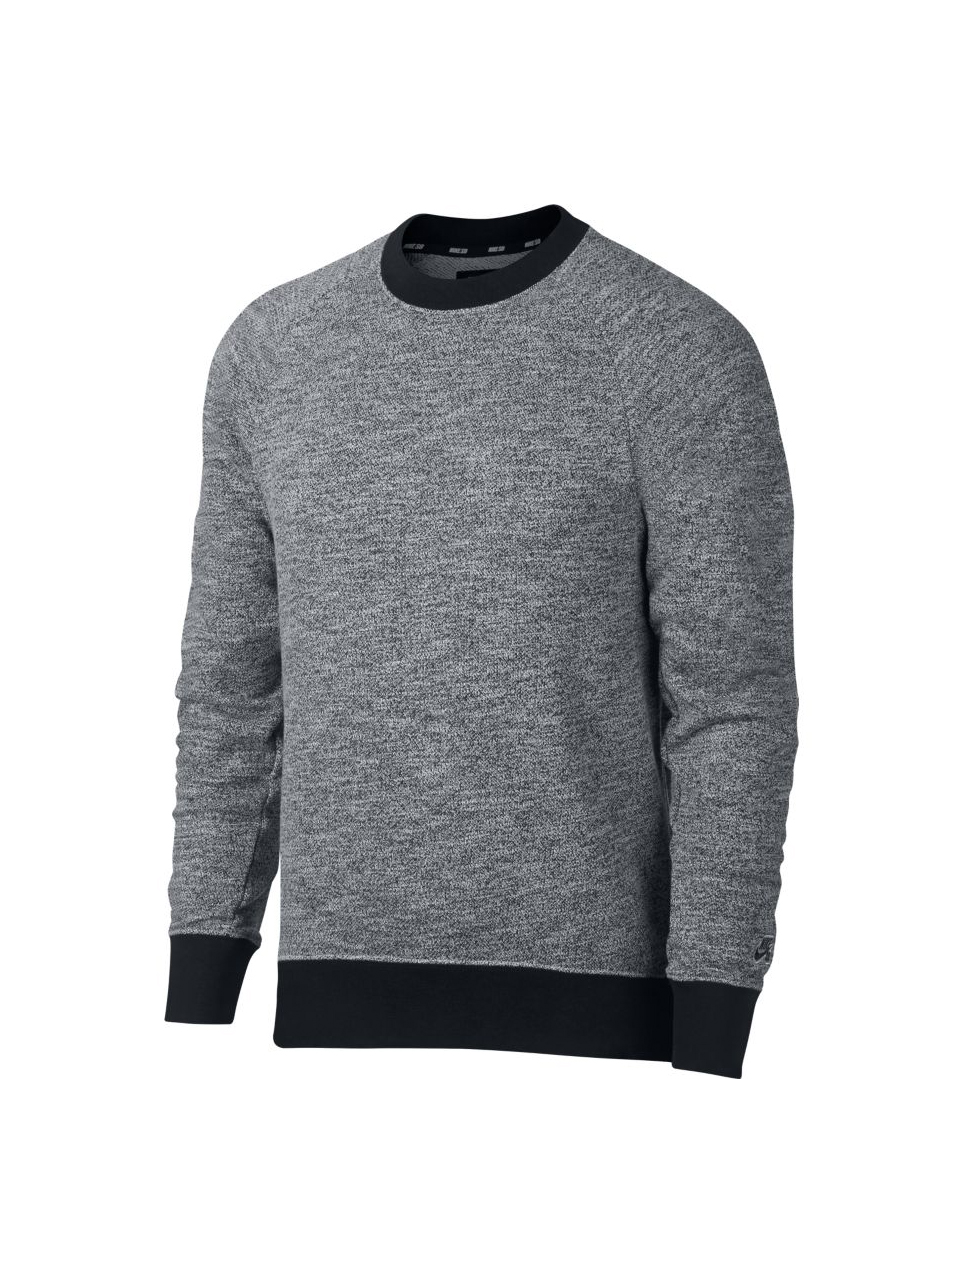 Nike SB Everett Crewneck Sweatshirt 